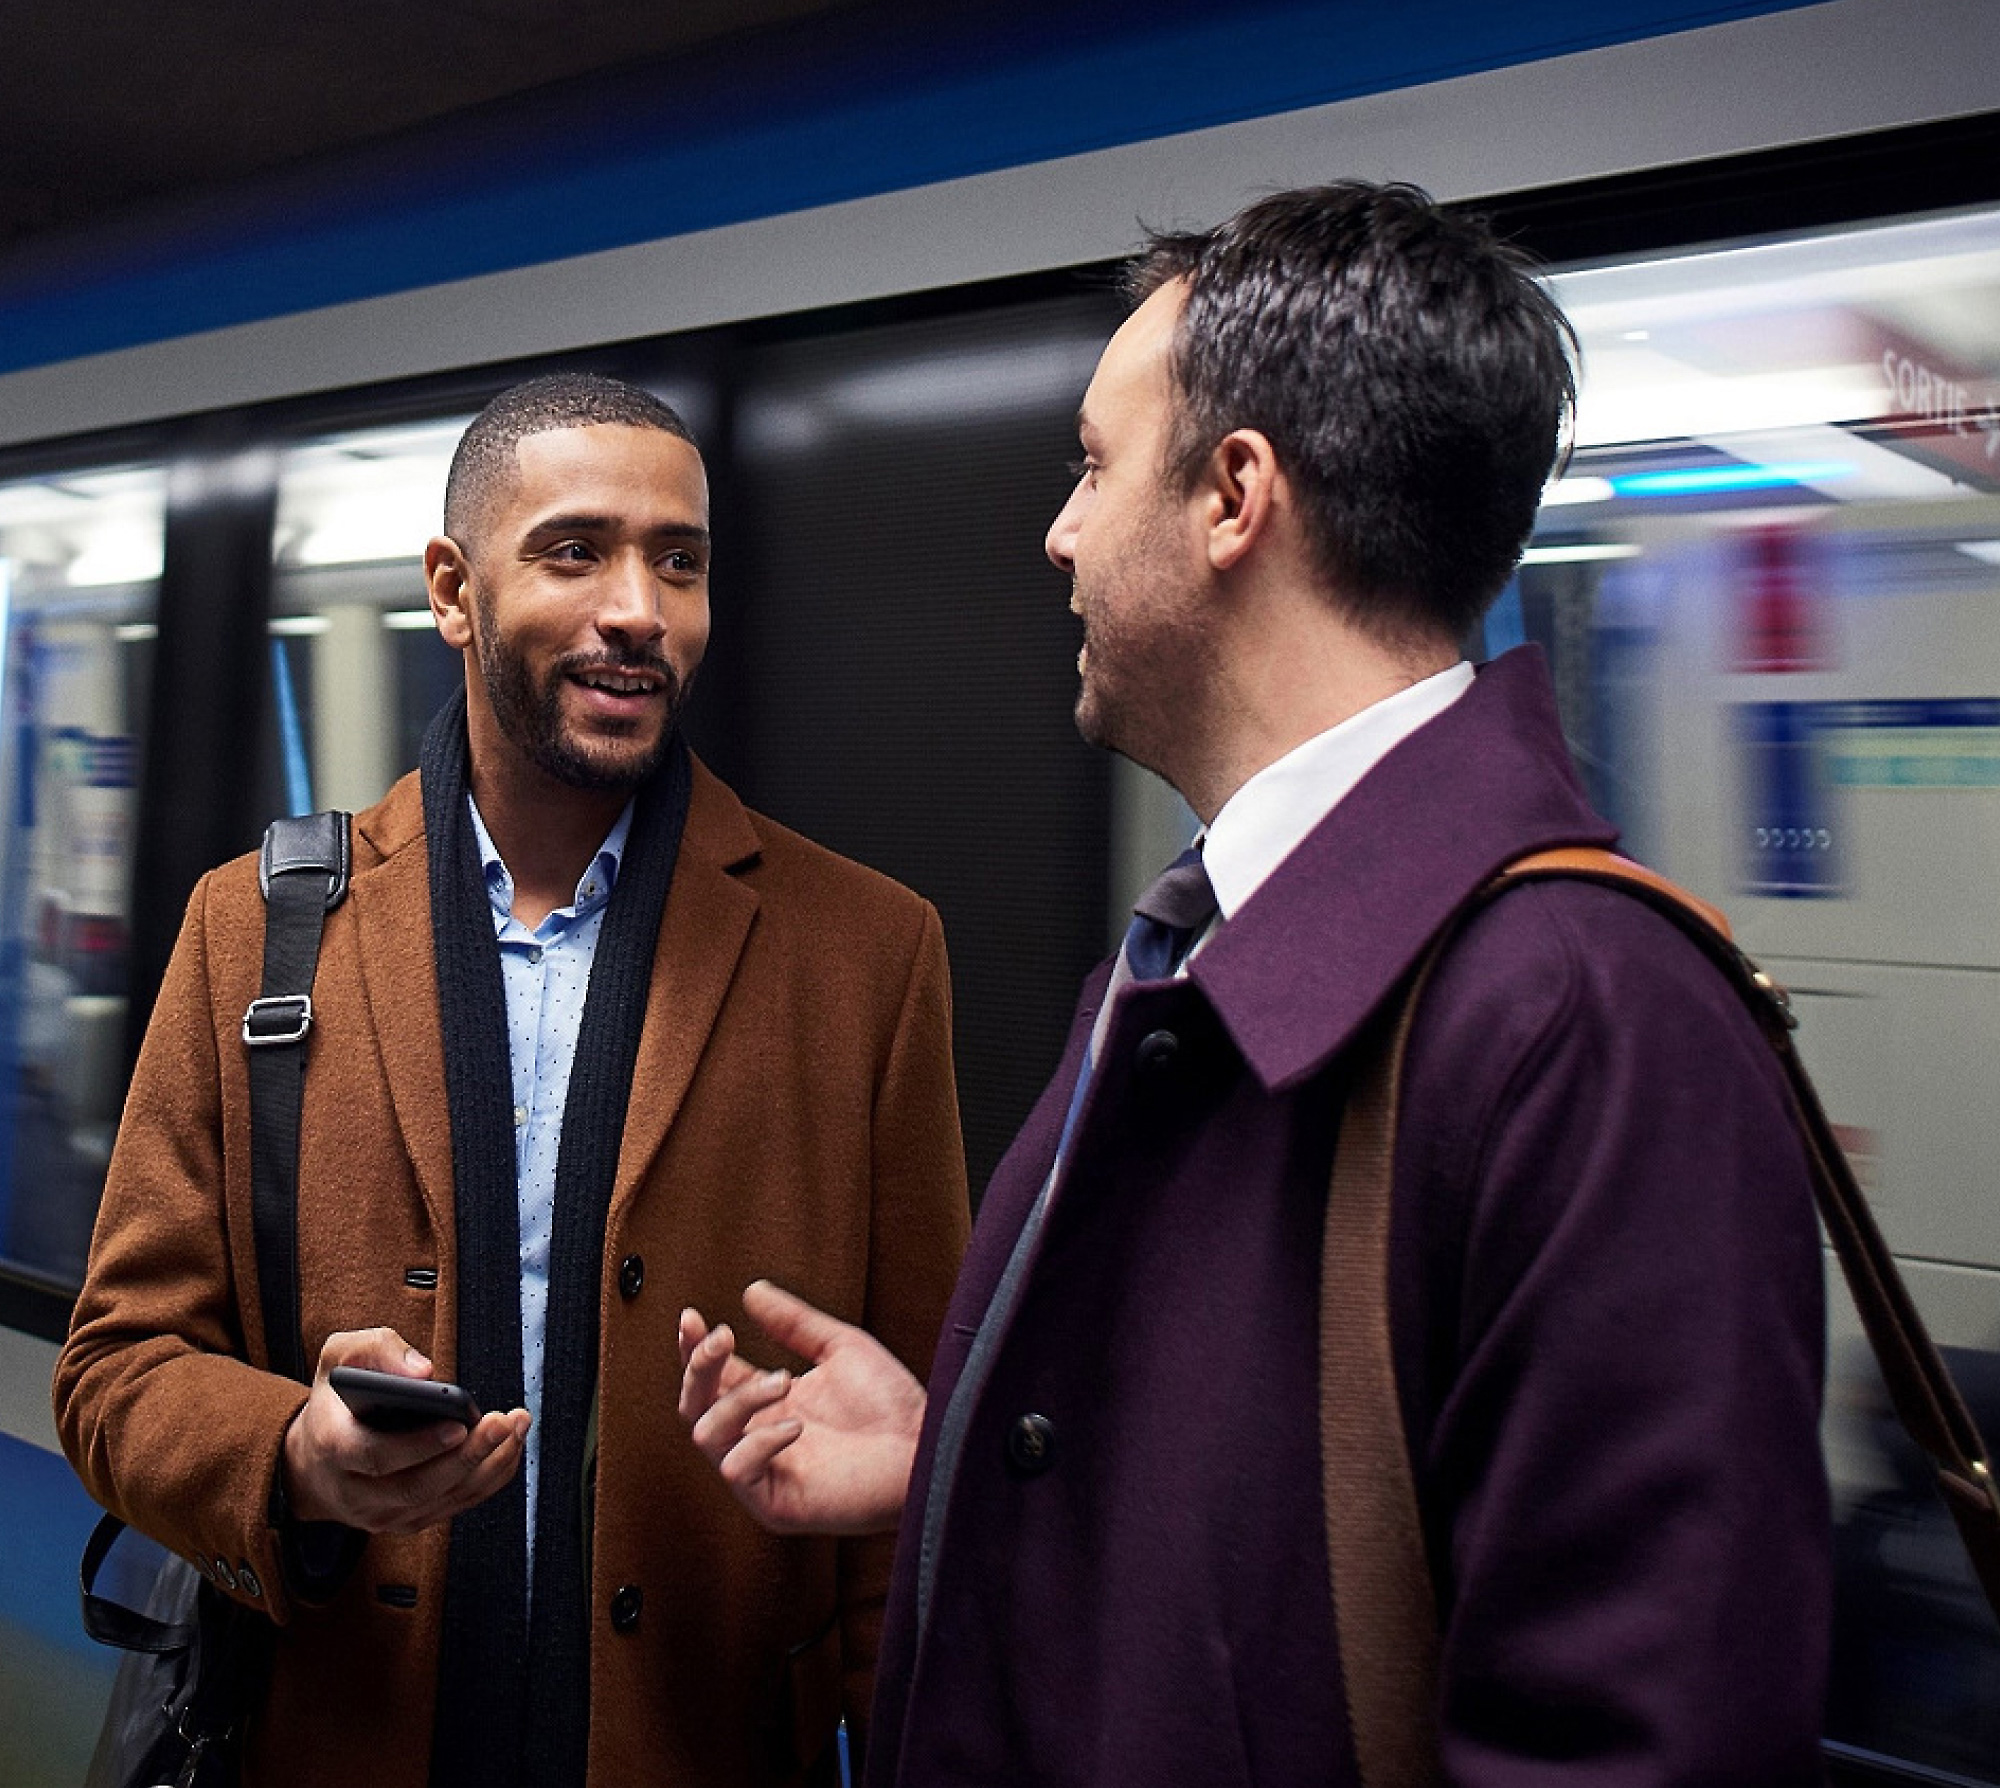 Deux hommes qui communiquent sur une plateforme de métro, l’un tenant un smartphone et un train flou en mouvement derrière eux.